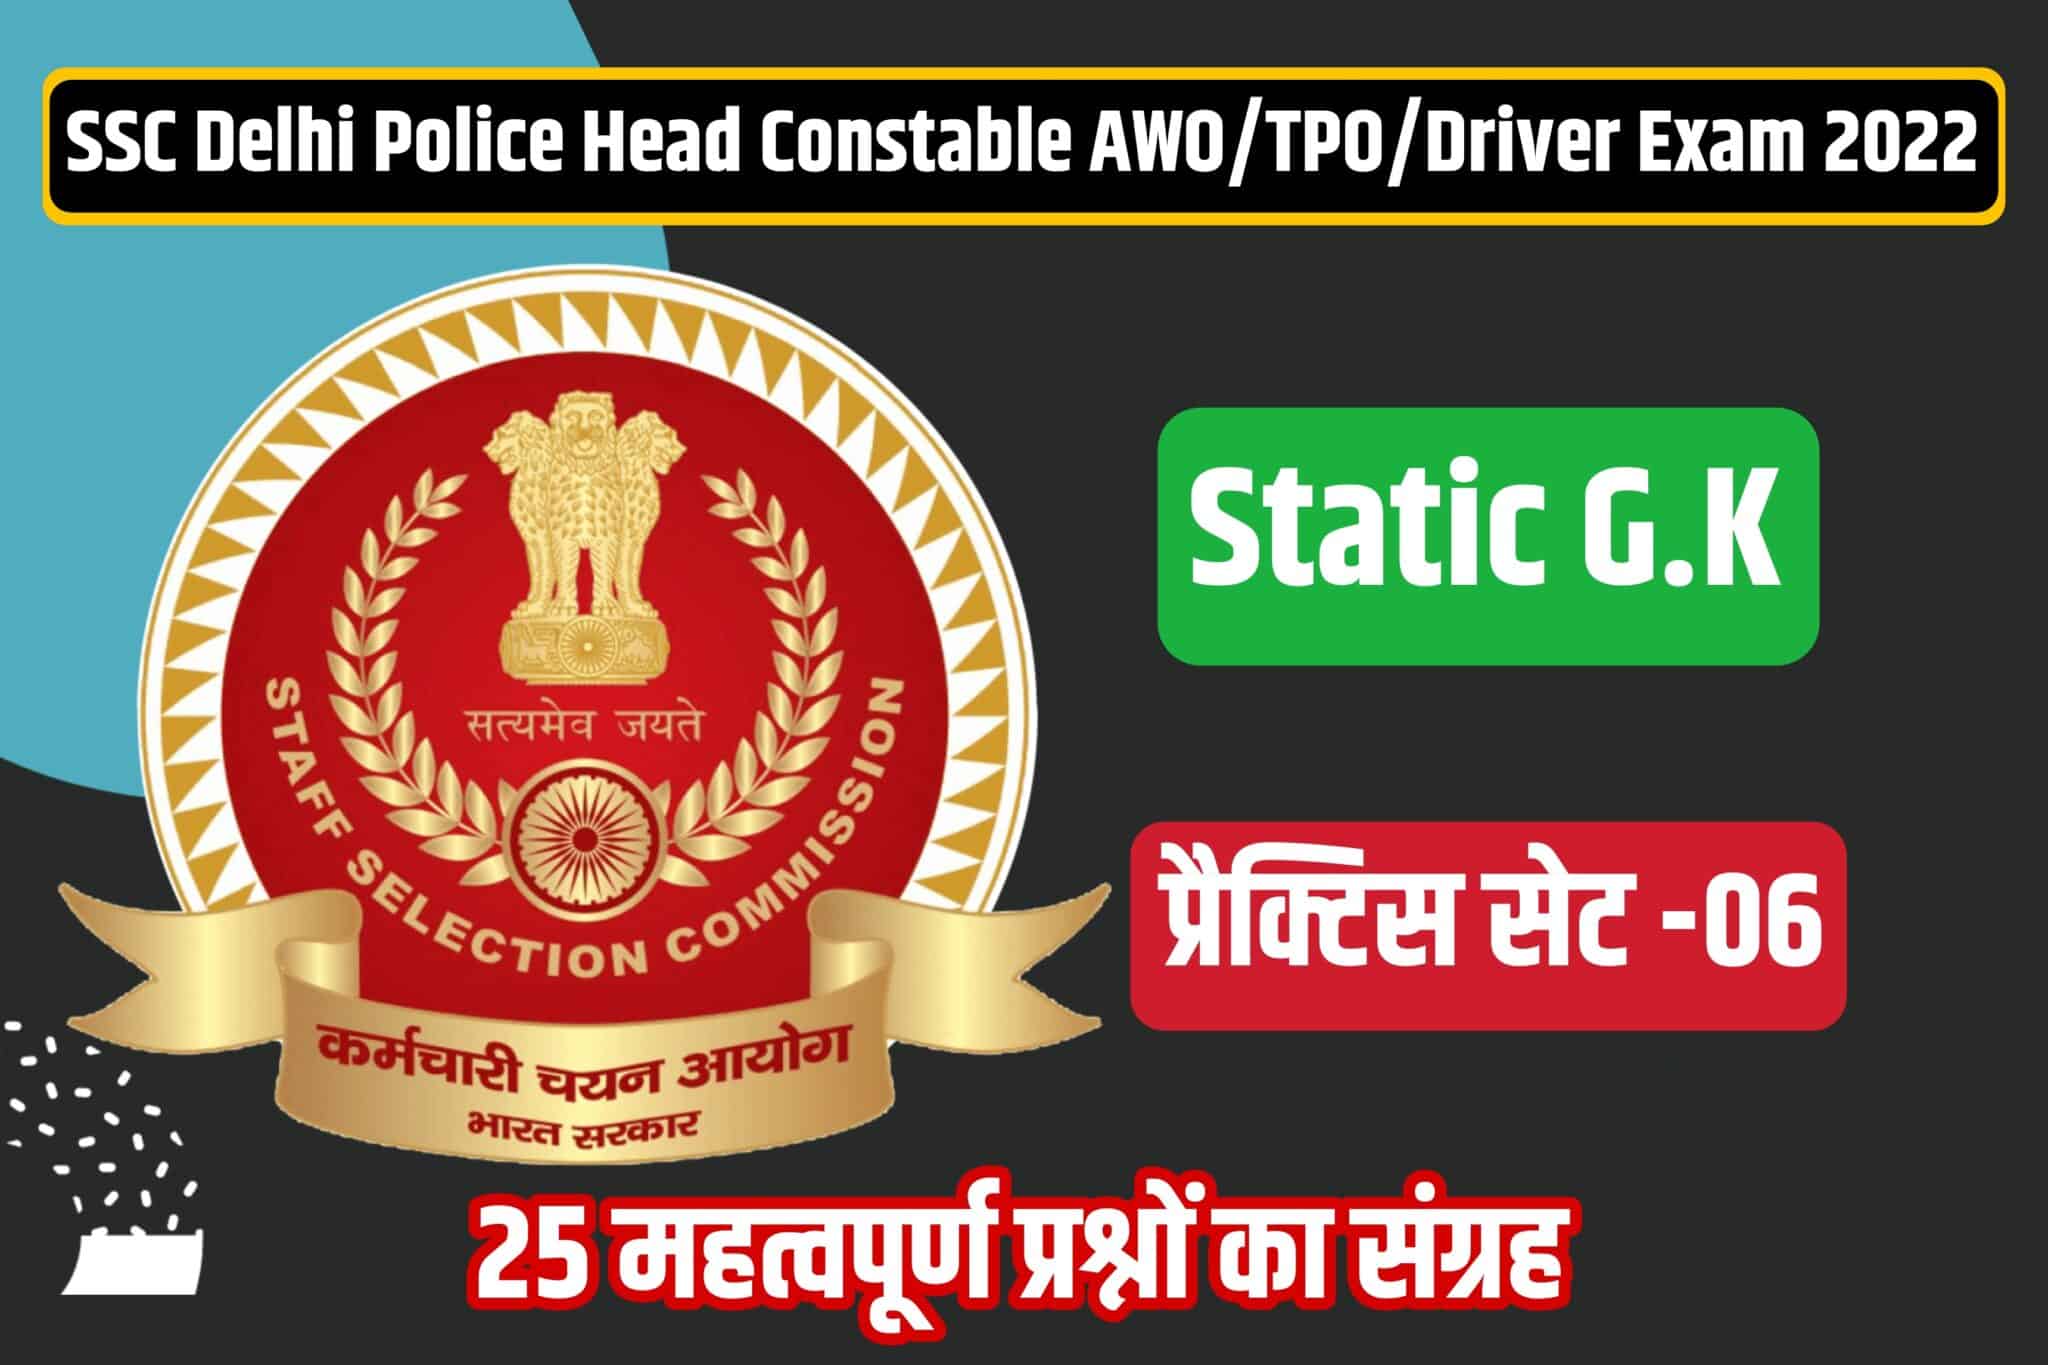 SSC Delhi Police Head Constable/AWO/TPO/Driver Static GK Practice Set 06 | परीक्षा में शामिल होने से पूर्व अवश्य पढ़ लें ये मुख्य प्रश्न